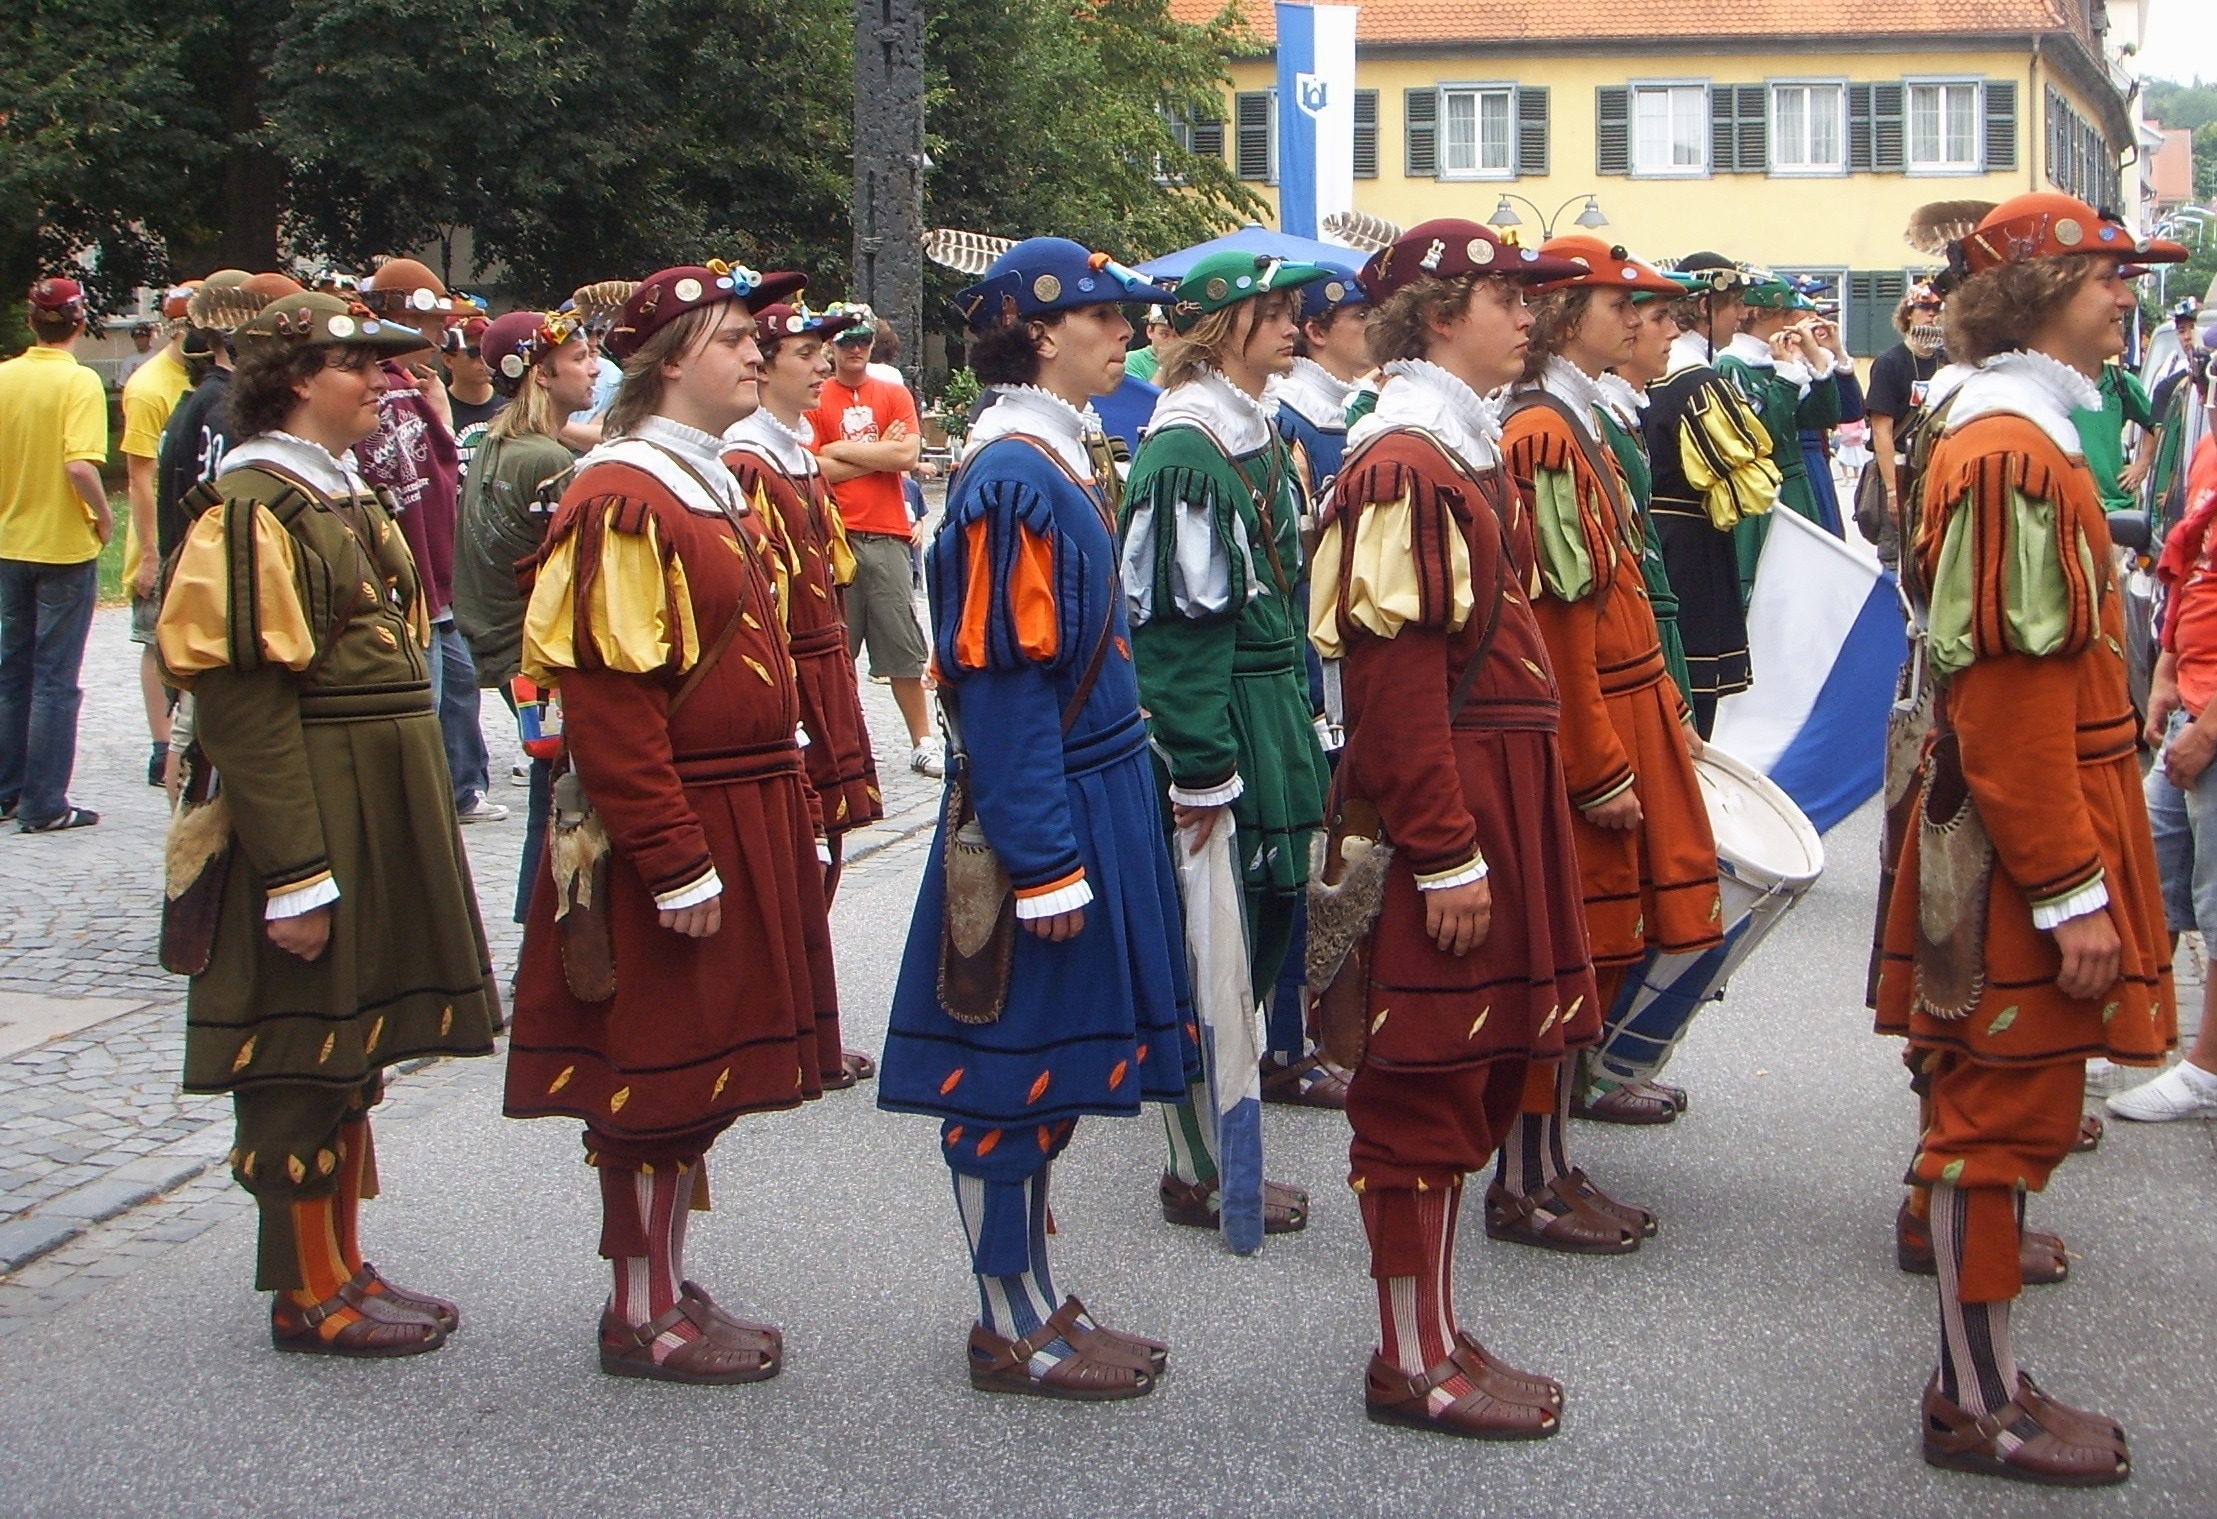 group of man wearing uniforms